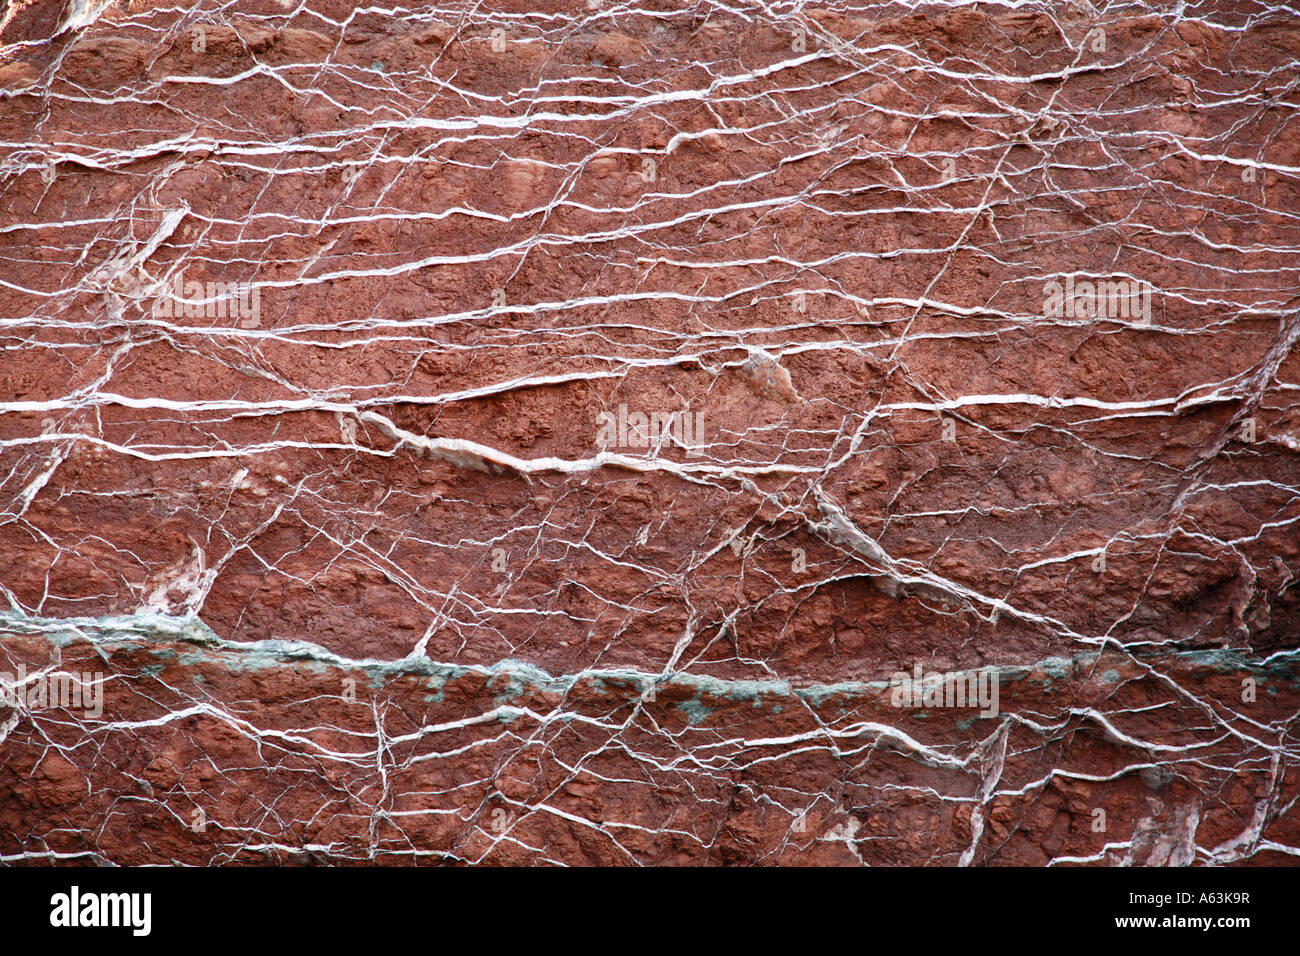 Veins of quartz in red metamorphic rock Stock Photo